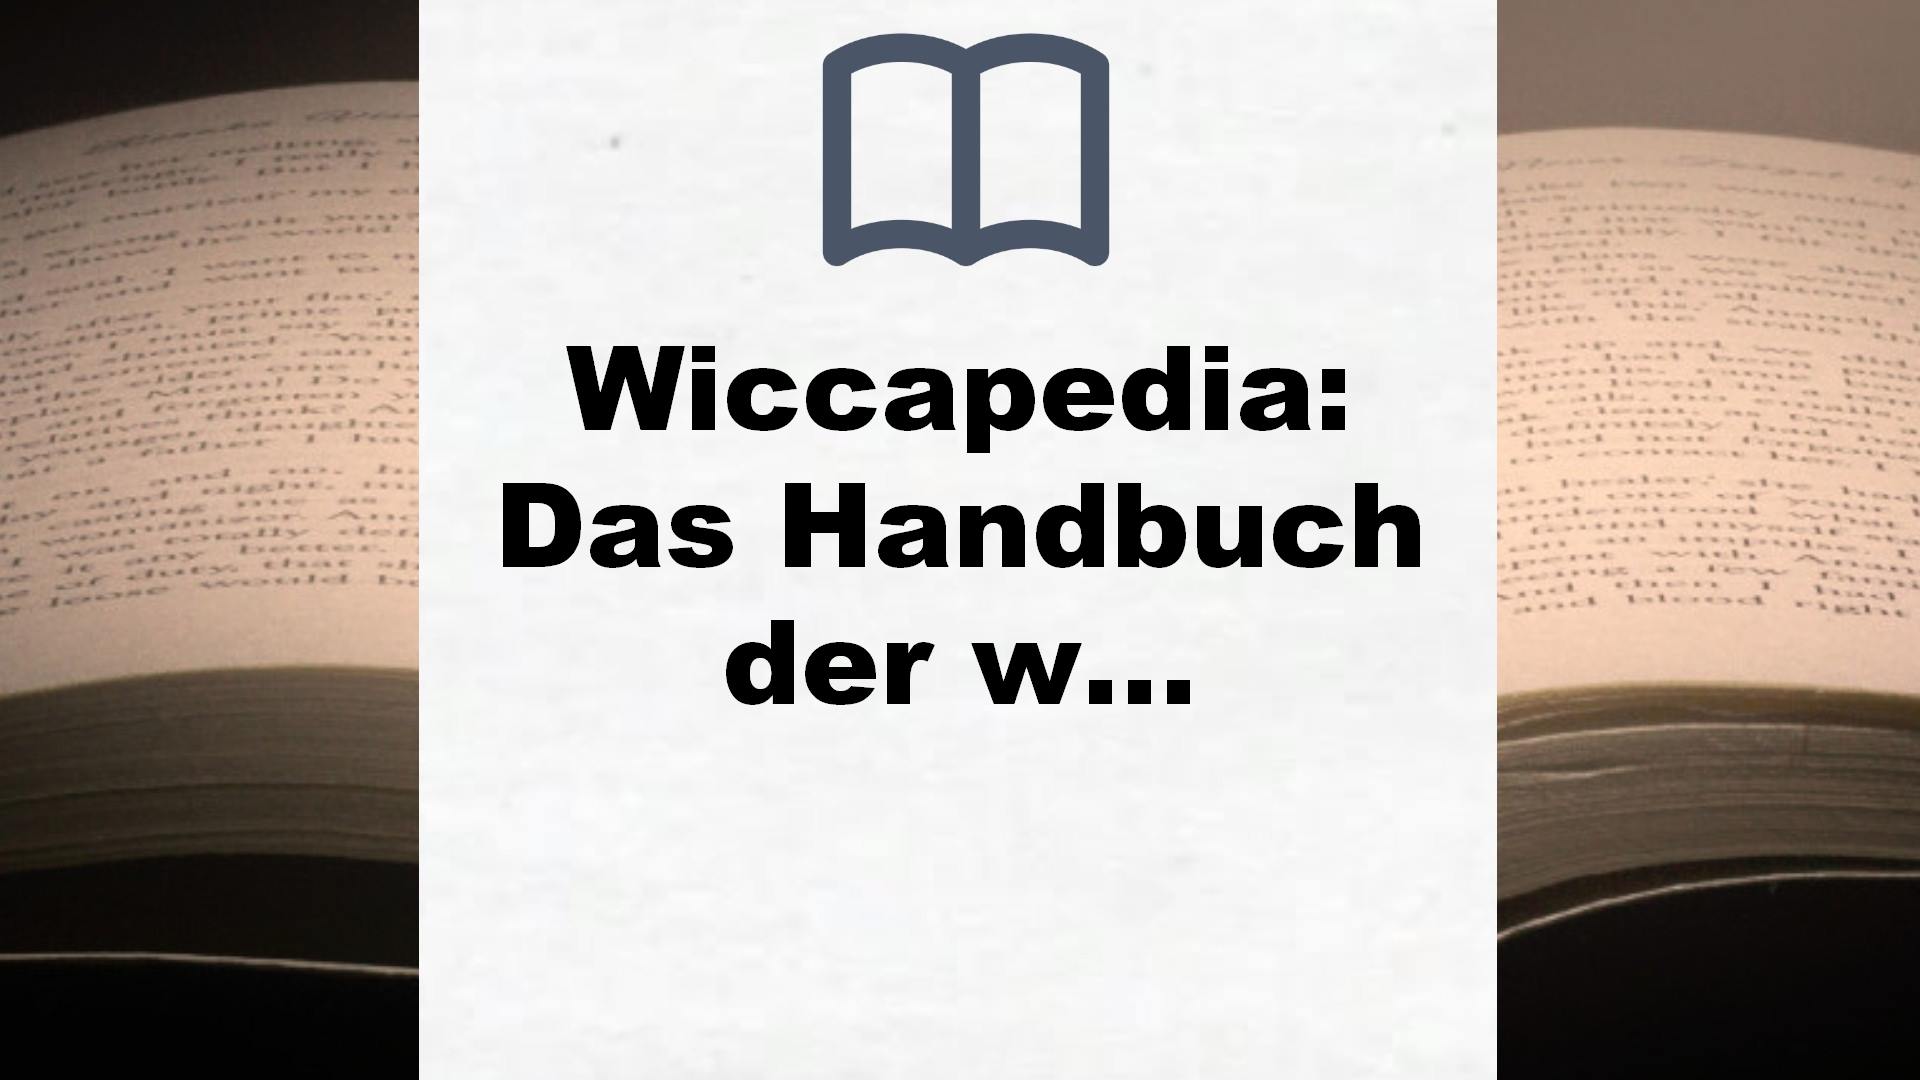 Wiccapedia: Das Handbuch der weißen Magie für moderne Hexen – Buchrezension